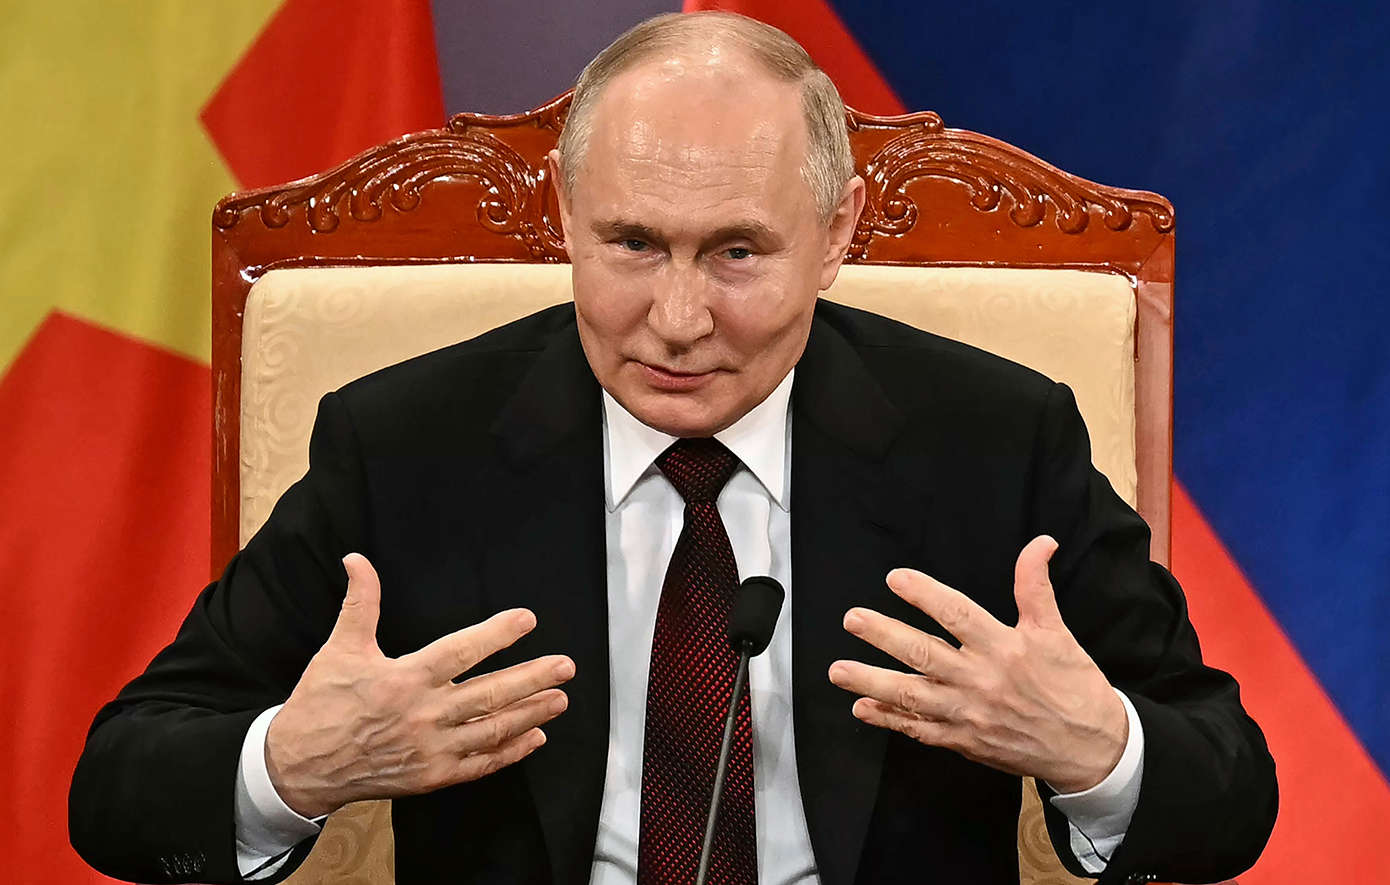 Ο Πούτιν είπε ότι η προτίμηση του για τον Μπάιντεν παραμένει αμετάβλητη παρά το ντιμπέιτ